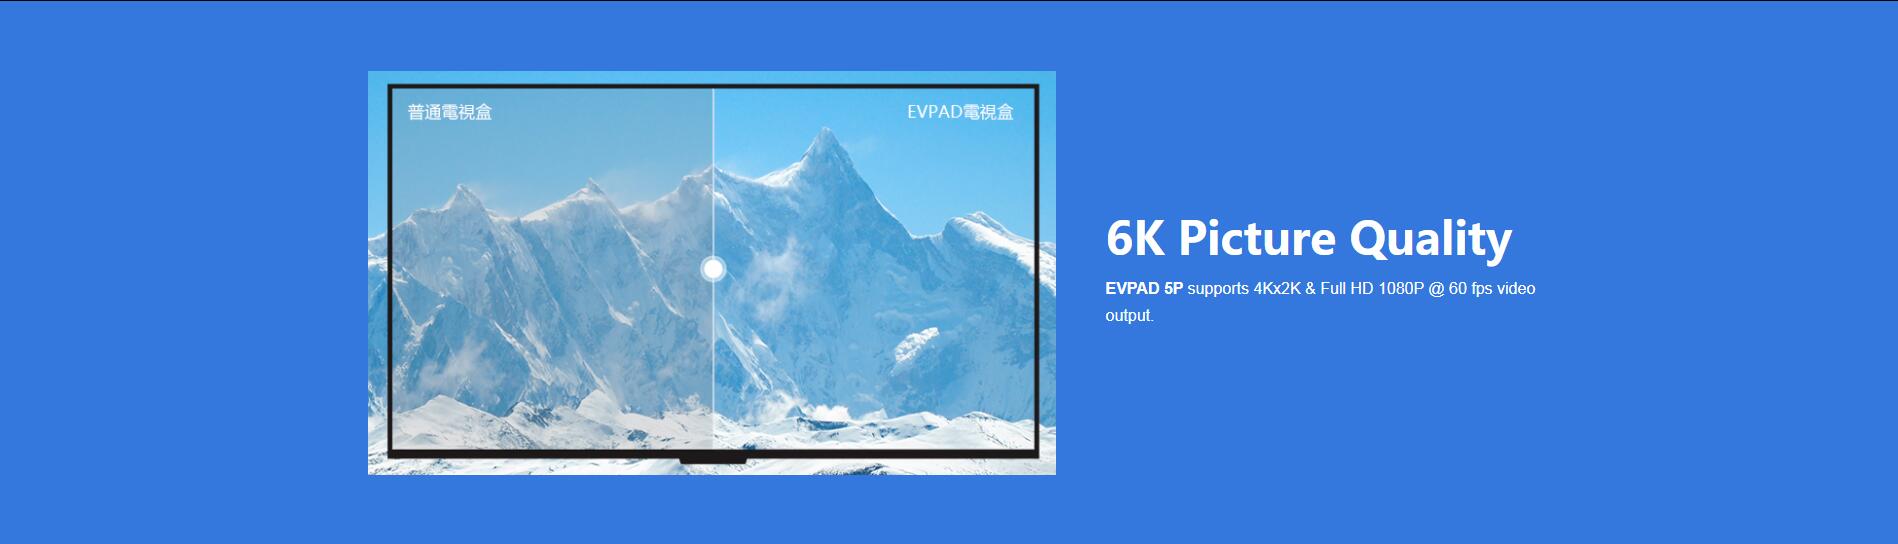 TV Box EVPAD 5P - Qualità dell'immagine 6K